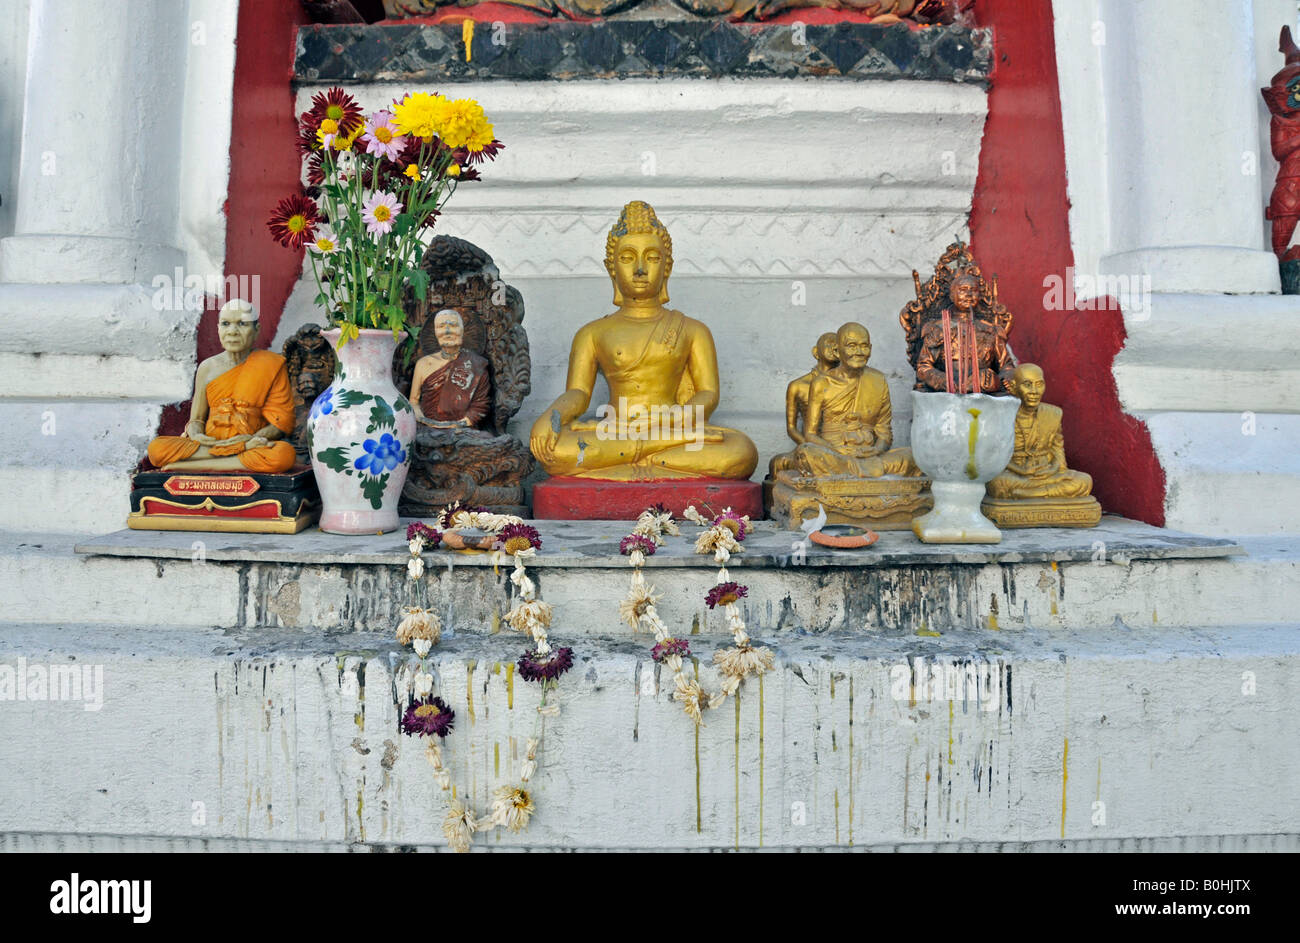 Freuen Sie sich vor einer Buddhastatue, Figuren von Mönchen und Blumen Girlanden, Yaang Kuong Tempel Wat Chiang Mai, Thailand, Süd Stockfoto